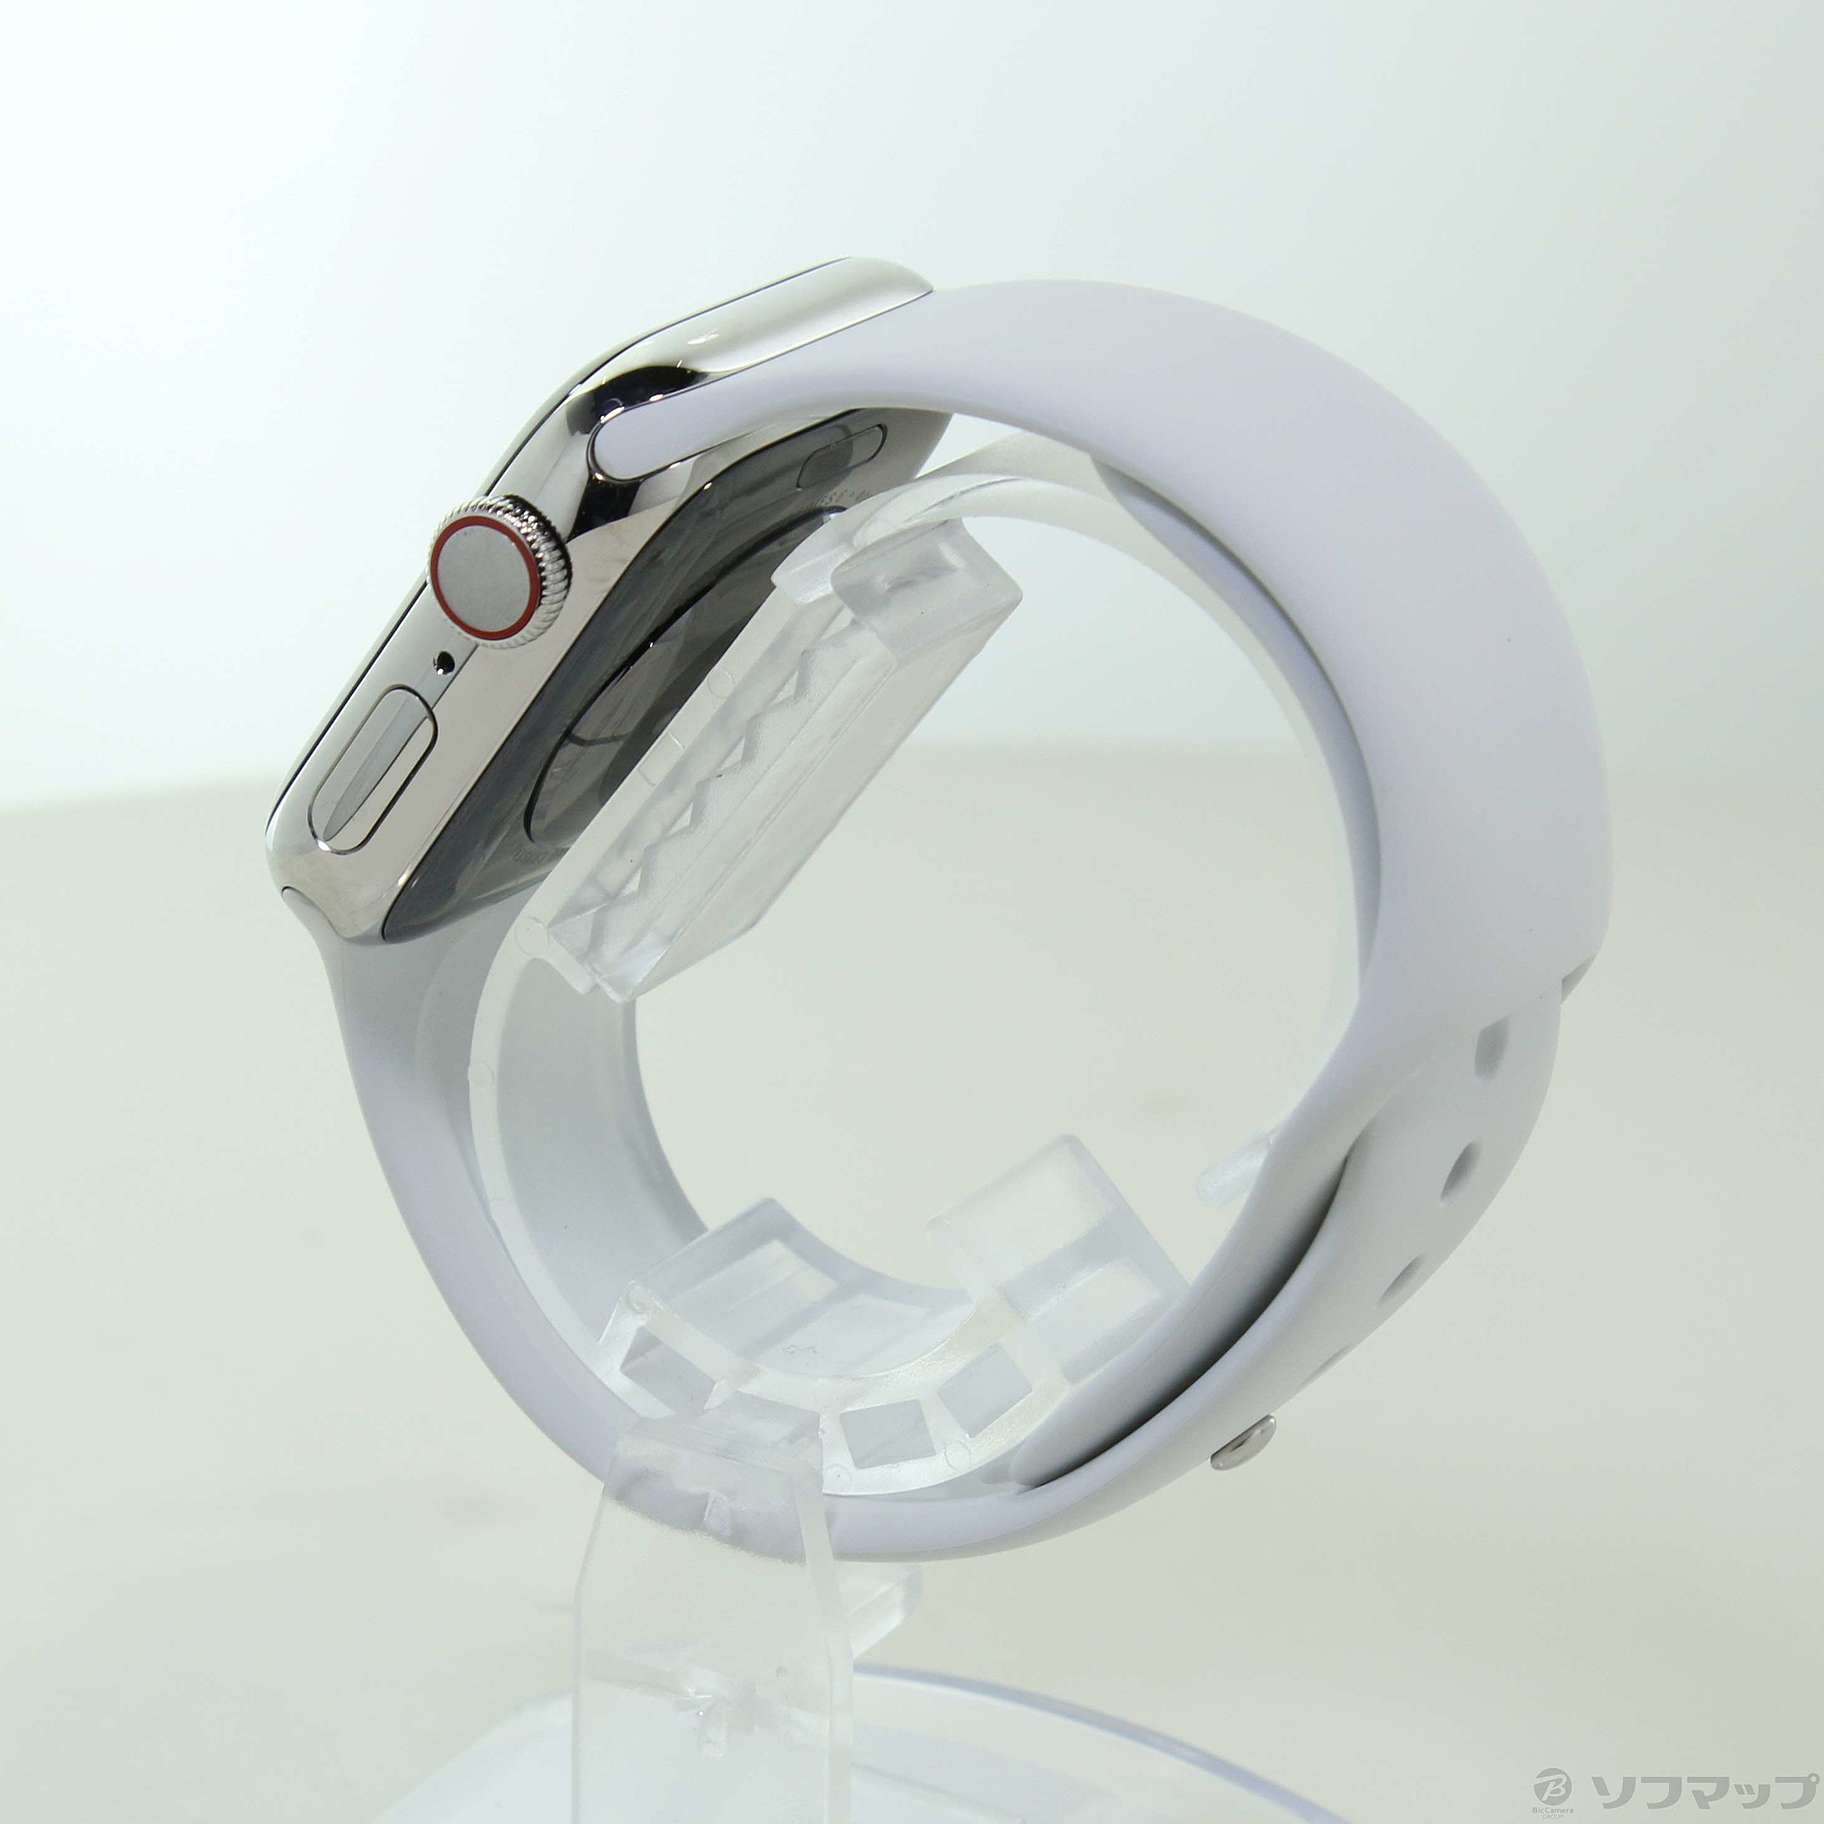 〔展示品〕 Apple Watch Series 6 GPS + Cellular 40mm シルバーステンレススチールケース ホワイトスポーツバンド